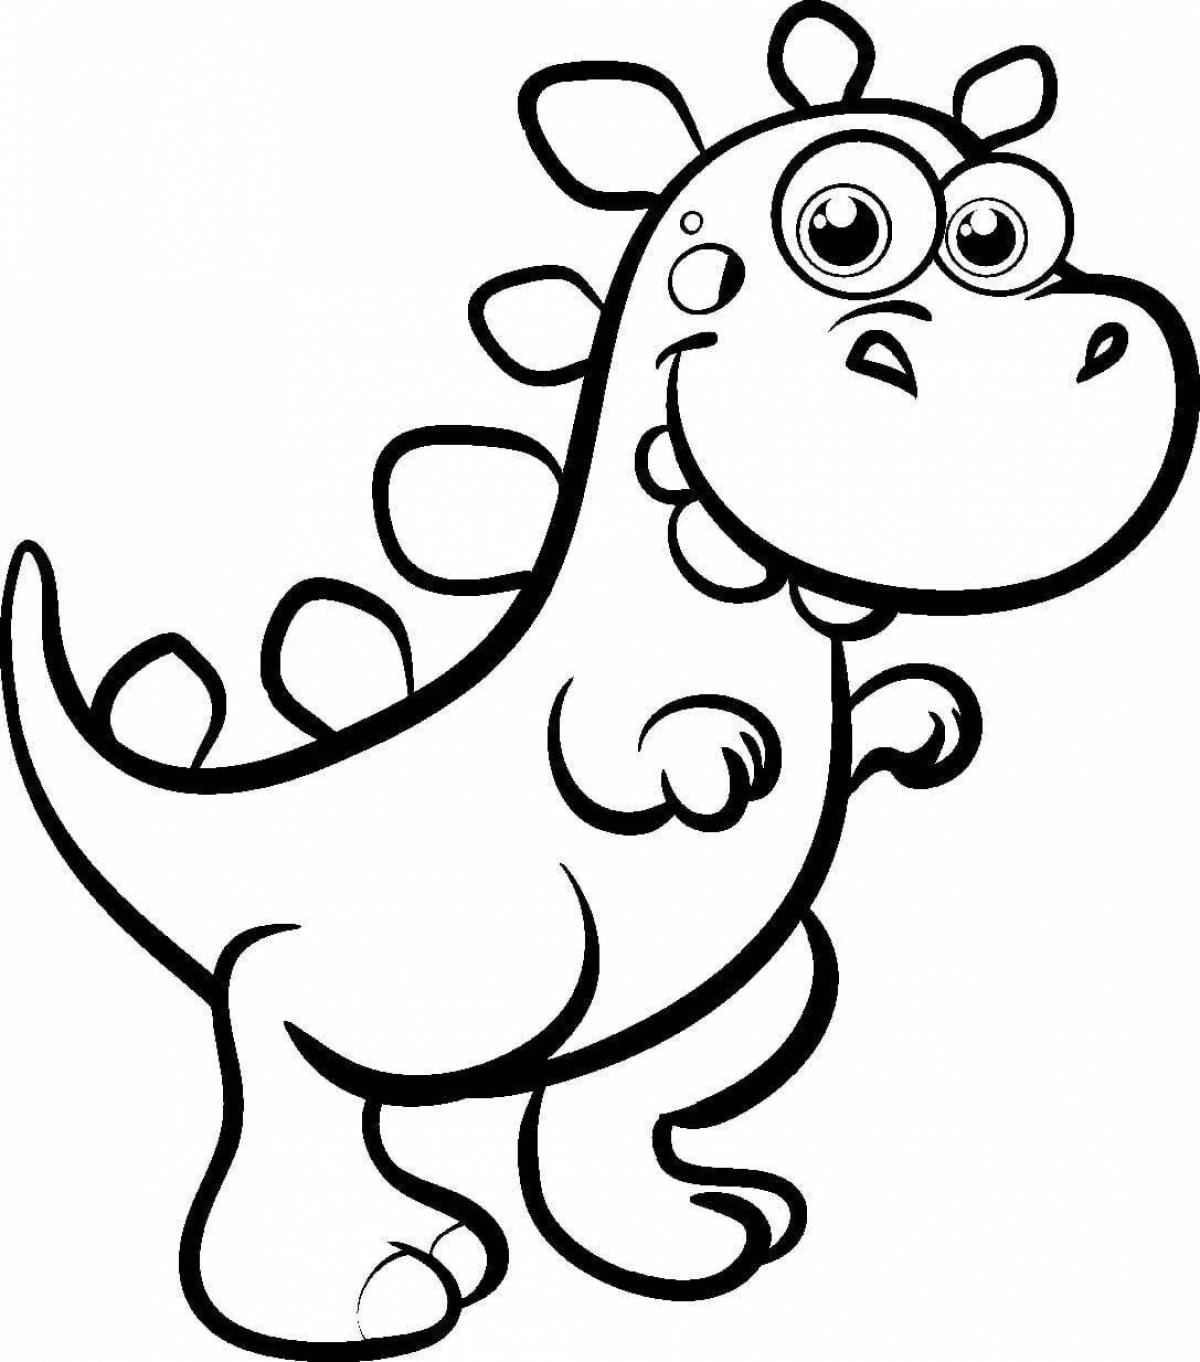 Раскраски с игривыми динозаврами для детей 5 лет